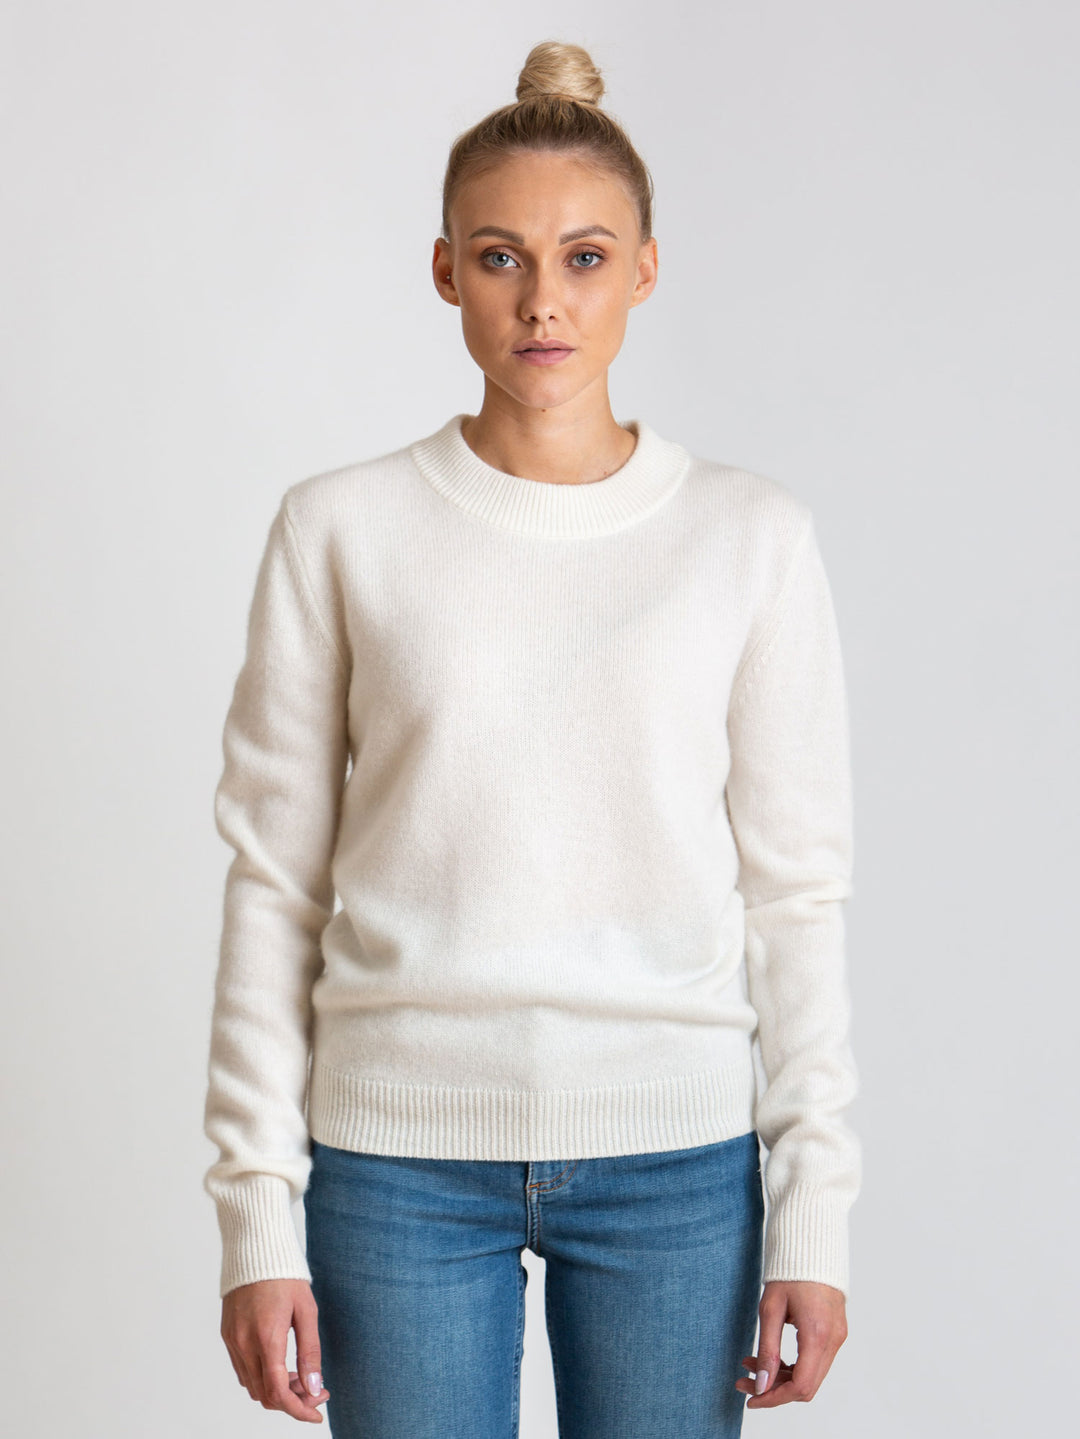 Cashmere sweater Sofia Long white 100% pure cashmere